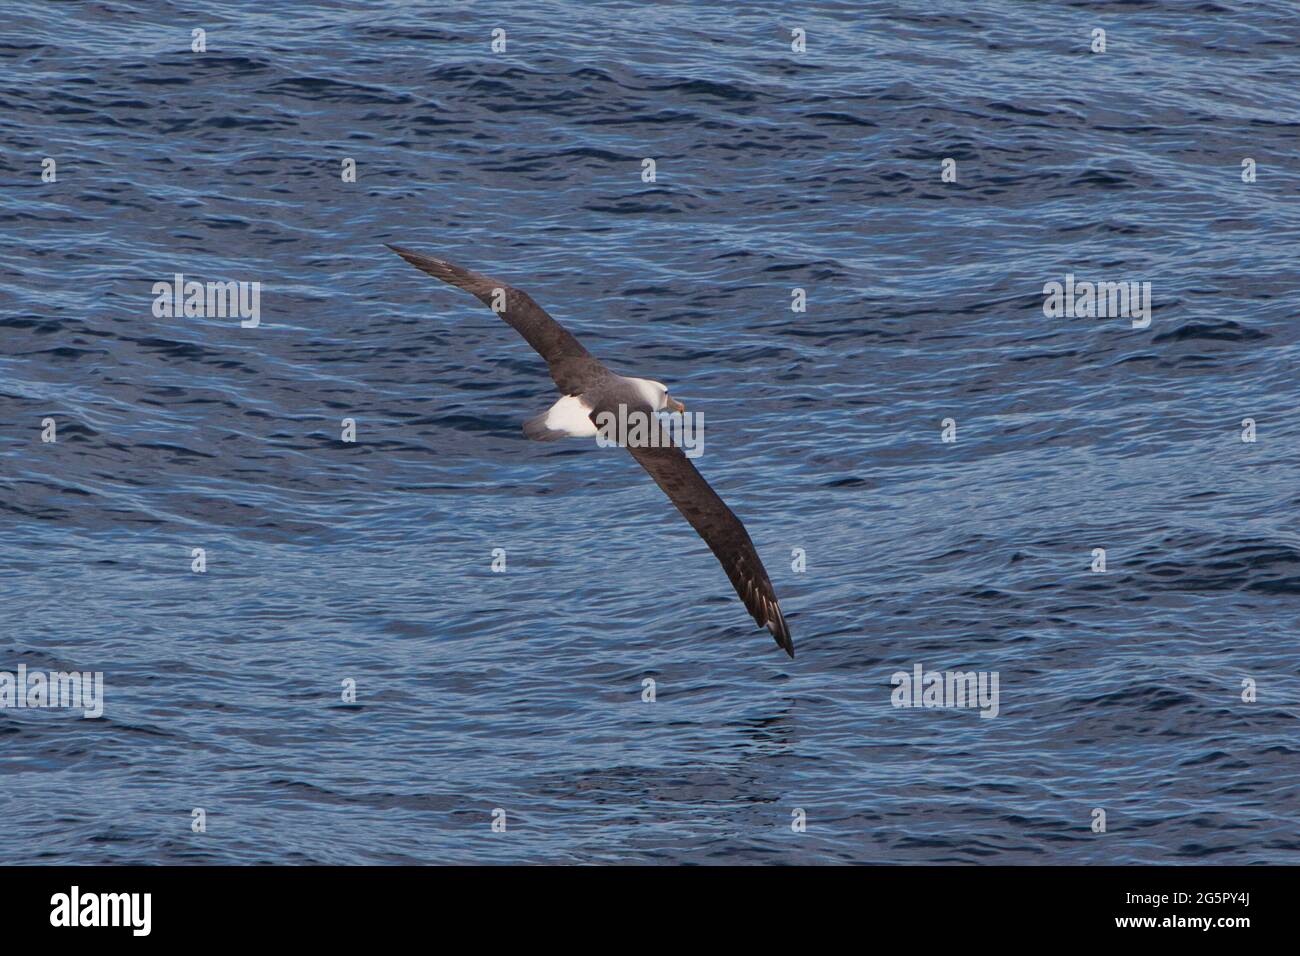 Un albatros con alas completamente esparcidas se desliza sobre el mar en el sur de la Isla del Sur, Nueva Zelanda con la punta del ala casi tocando el agua Foto de stock